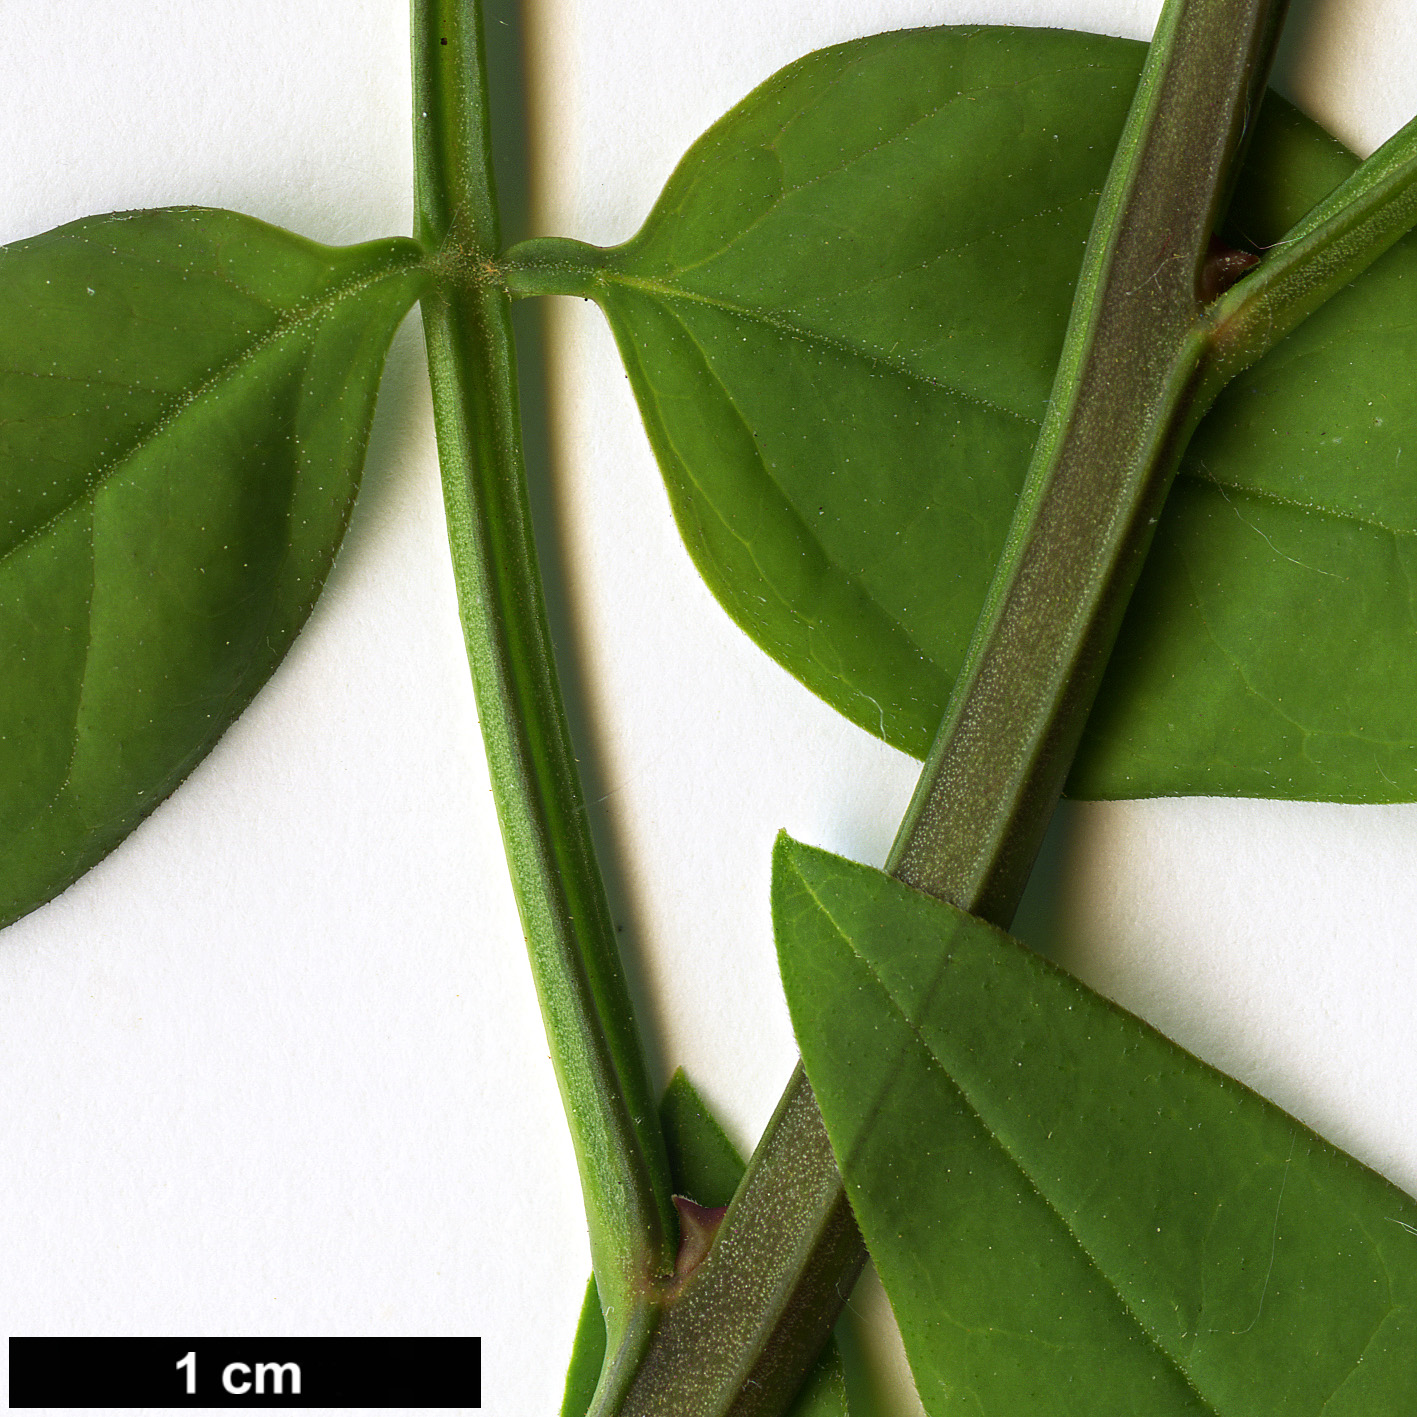 High resolution image: Family: Oleaceae - Genus: Jasminum - Taxon: humile